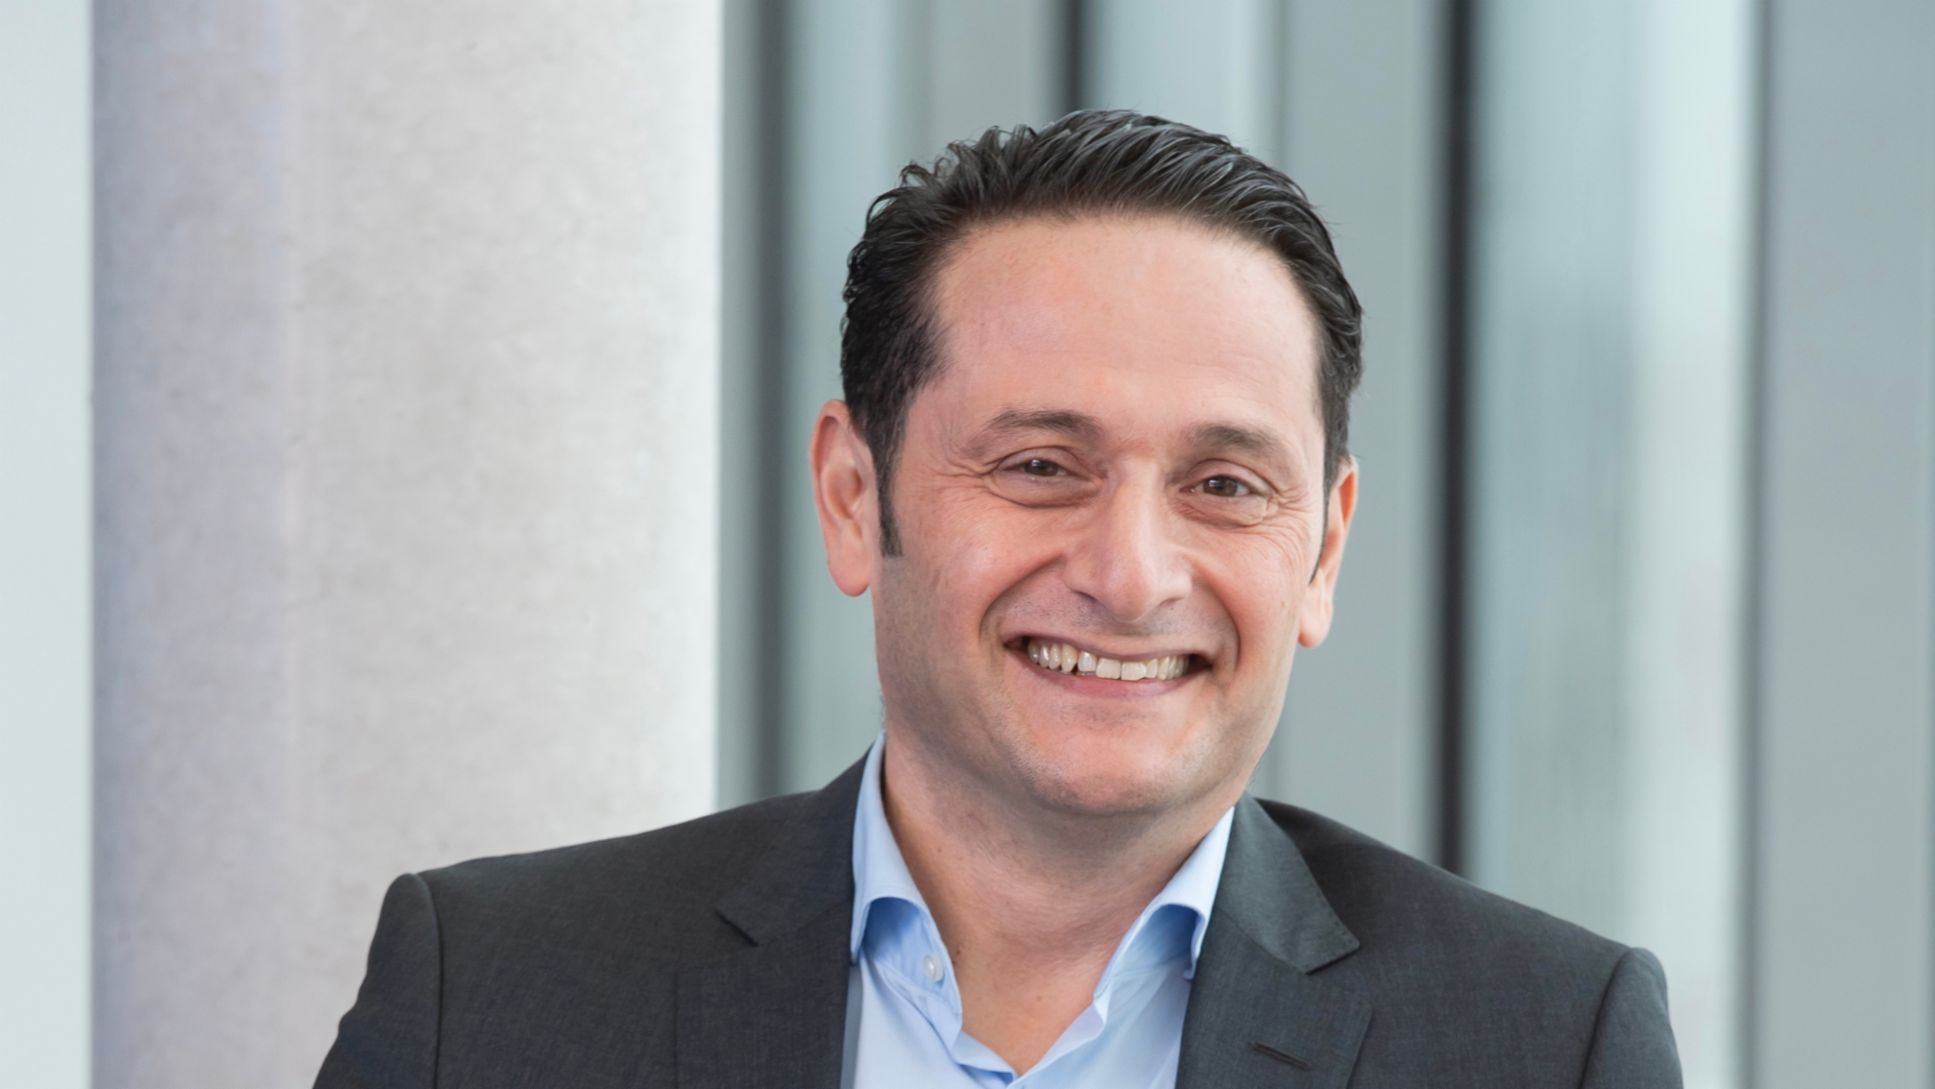 Nazif Mehmet Yazici, future CEO of Porsche Engineering Services North America, 2023, Porsche AG